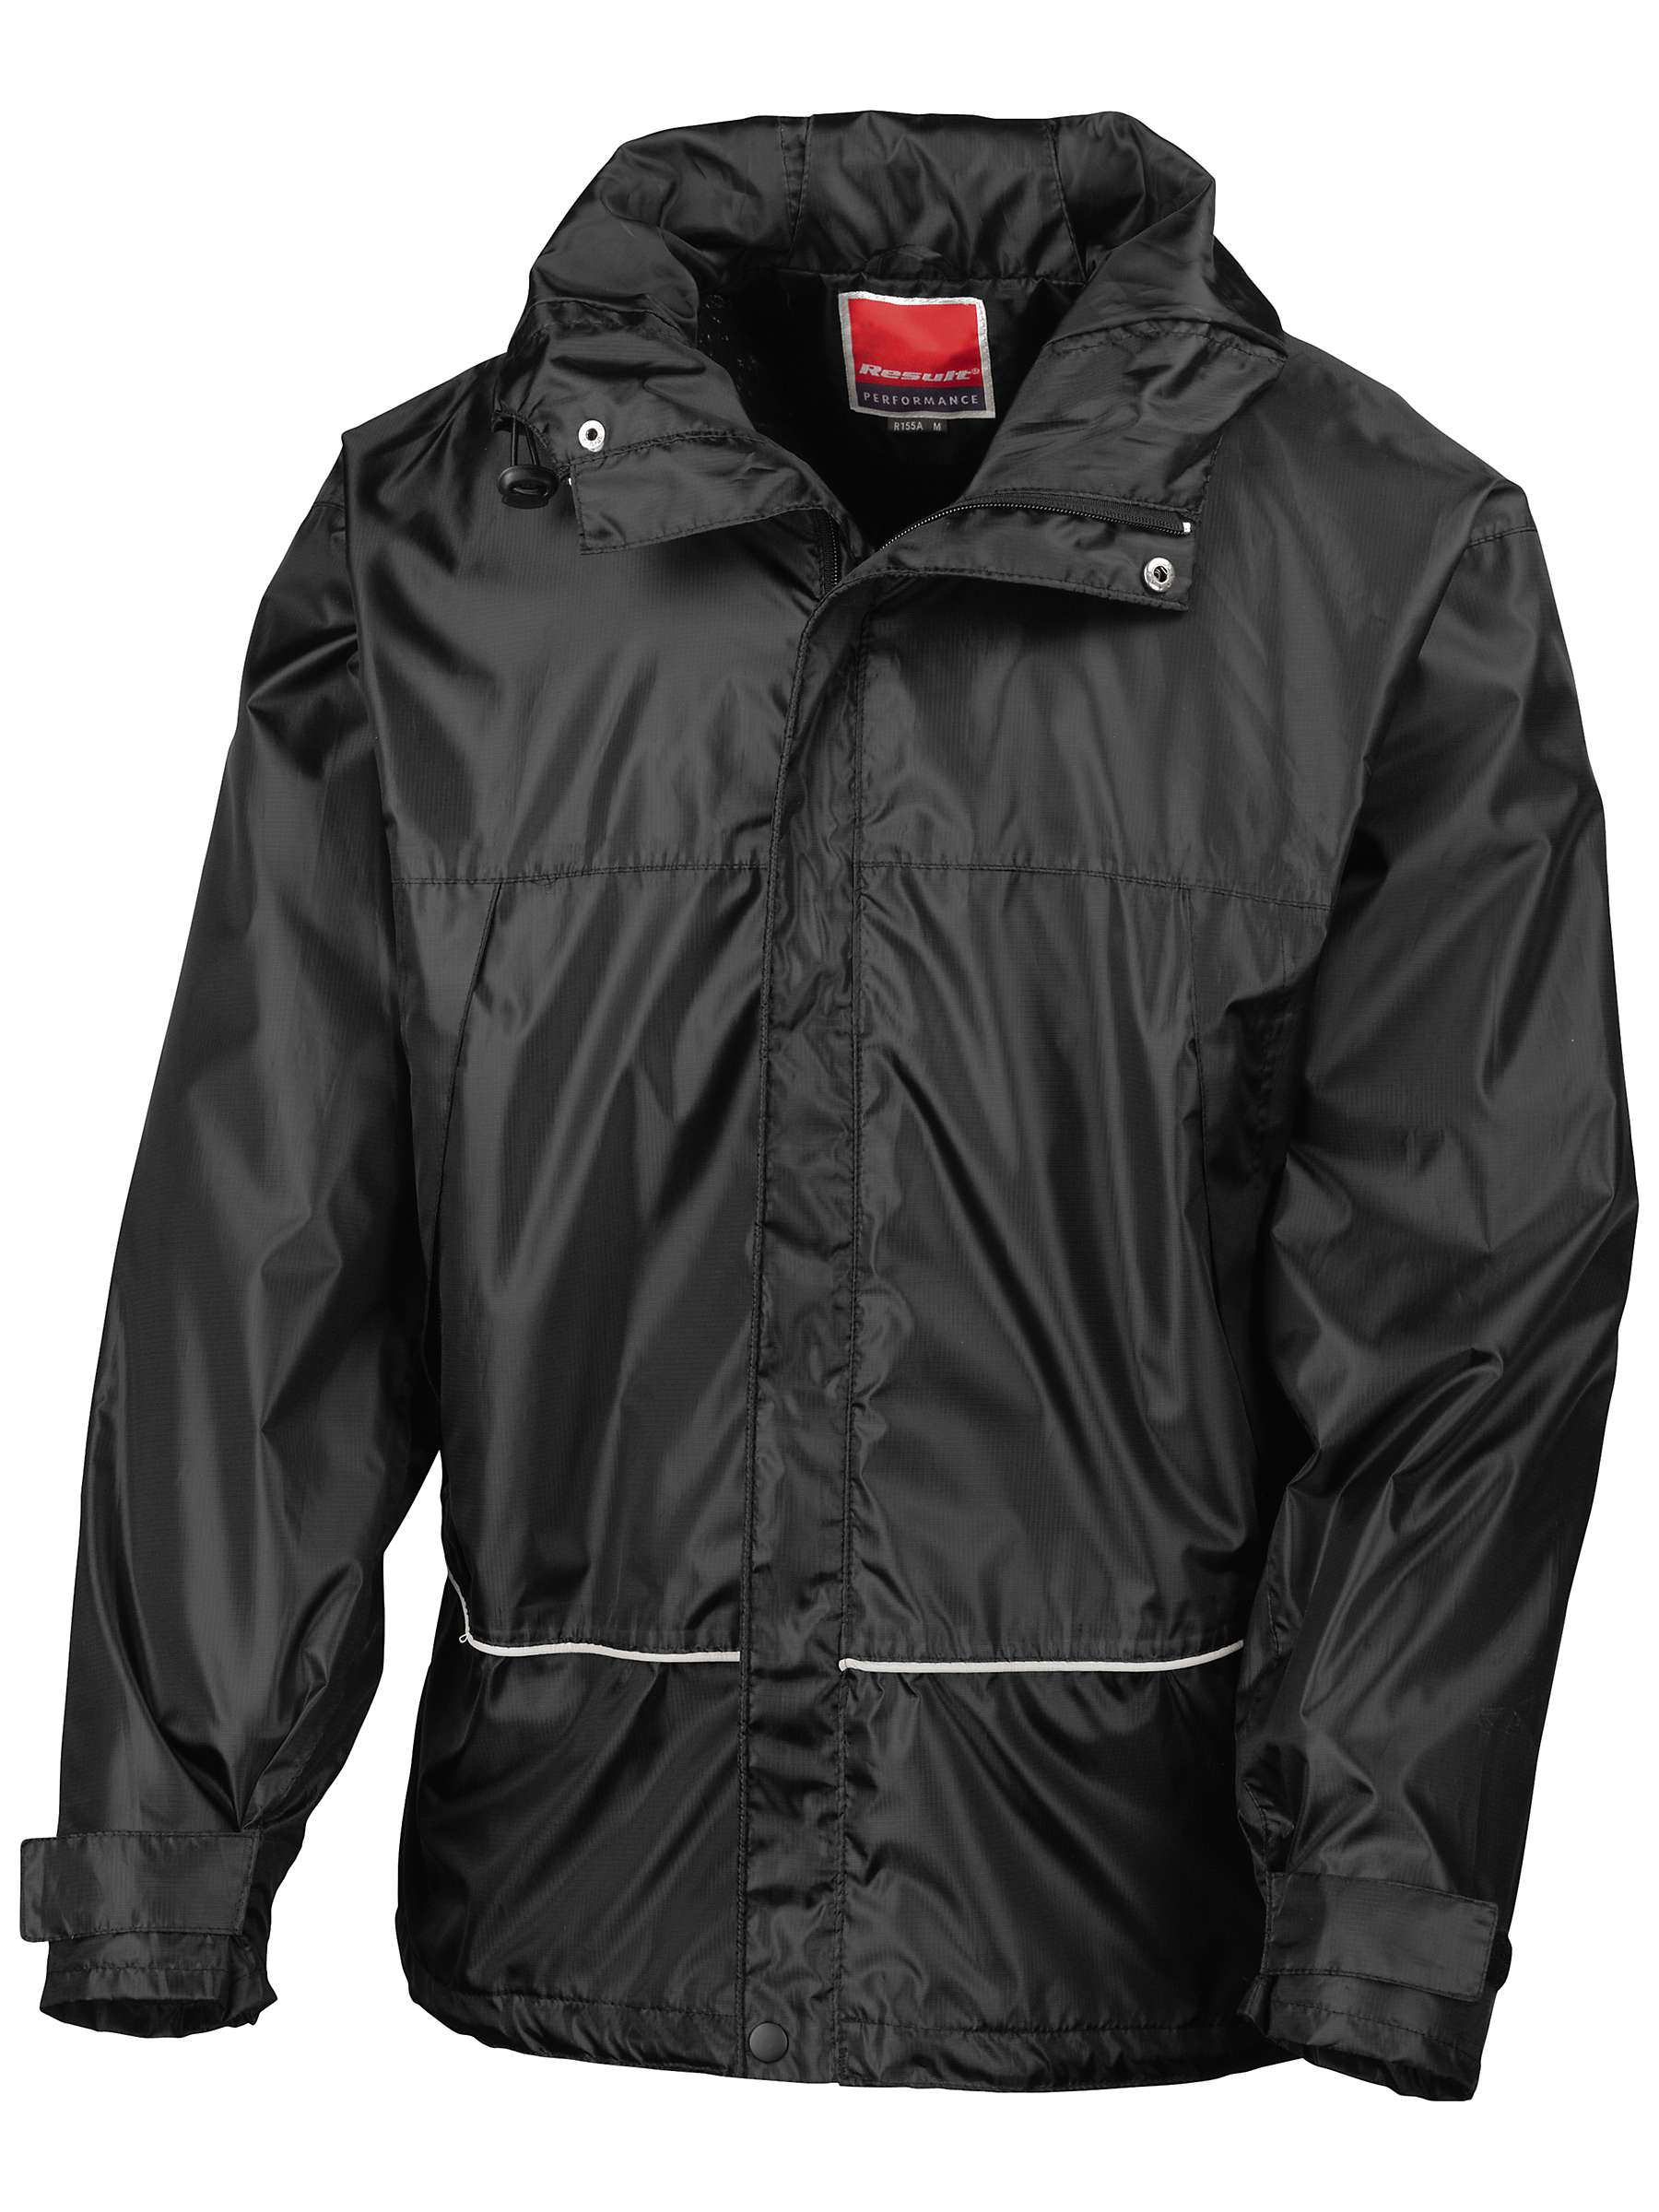 Buy School Unisex Waterproof Jacket, Black Online at johnlewis.com